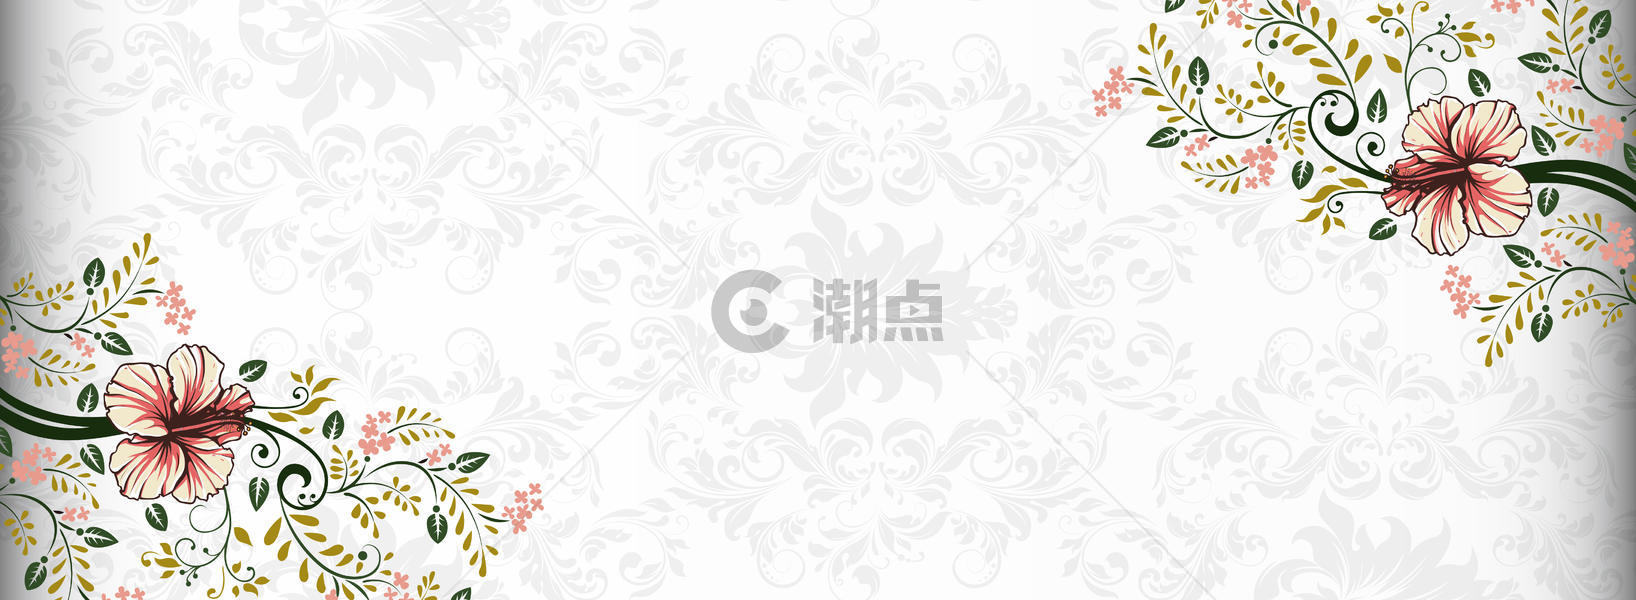 花卉banner图片素材免费下载